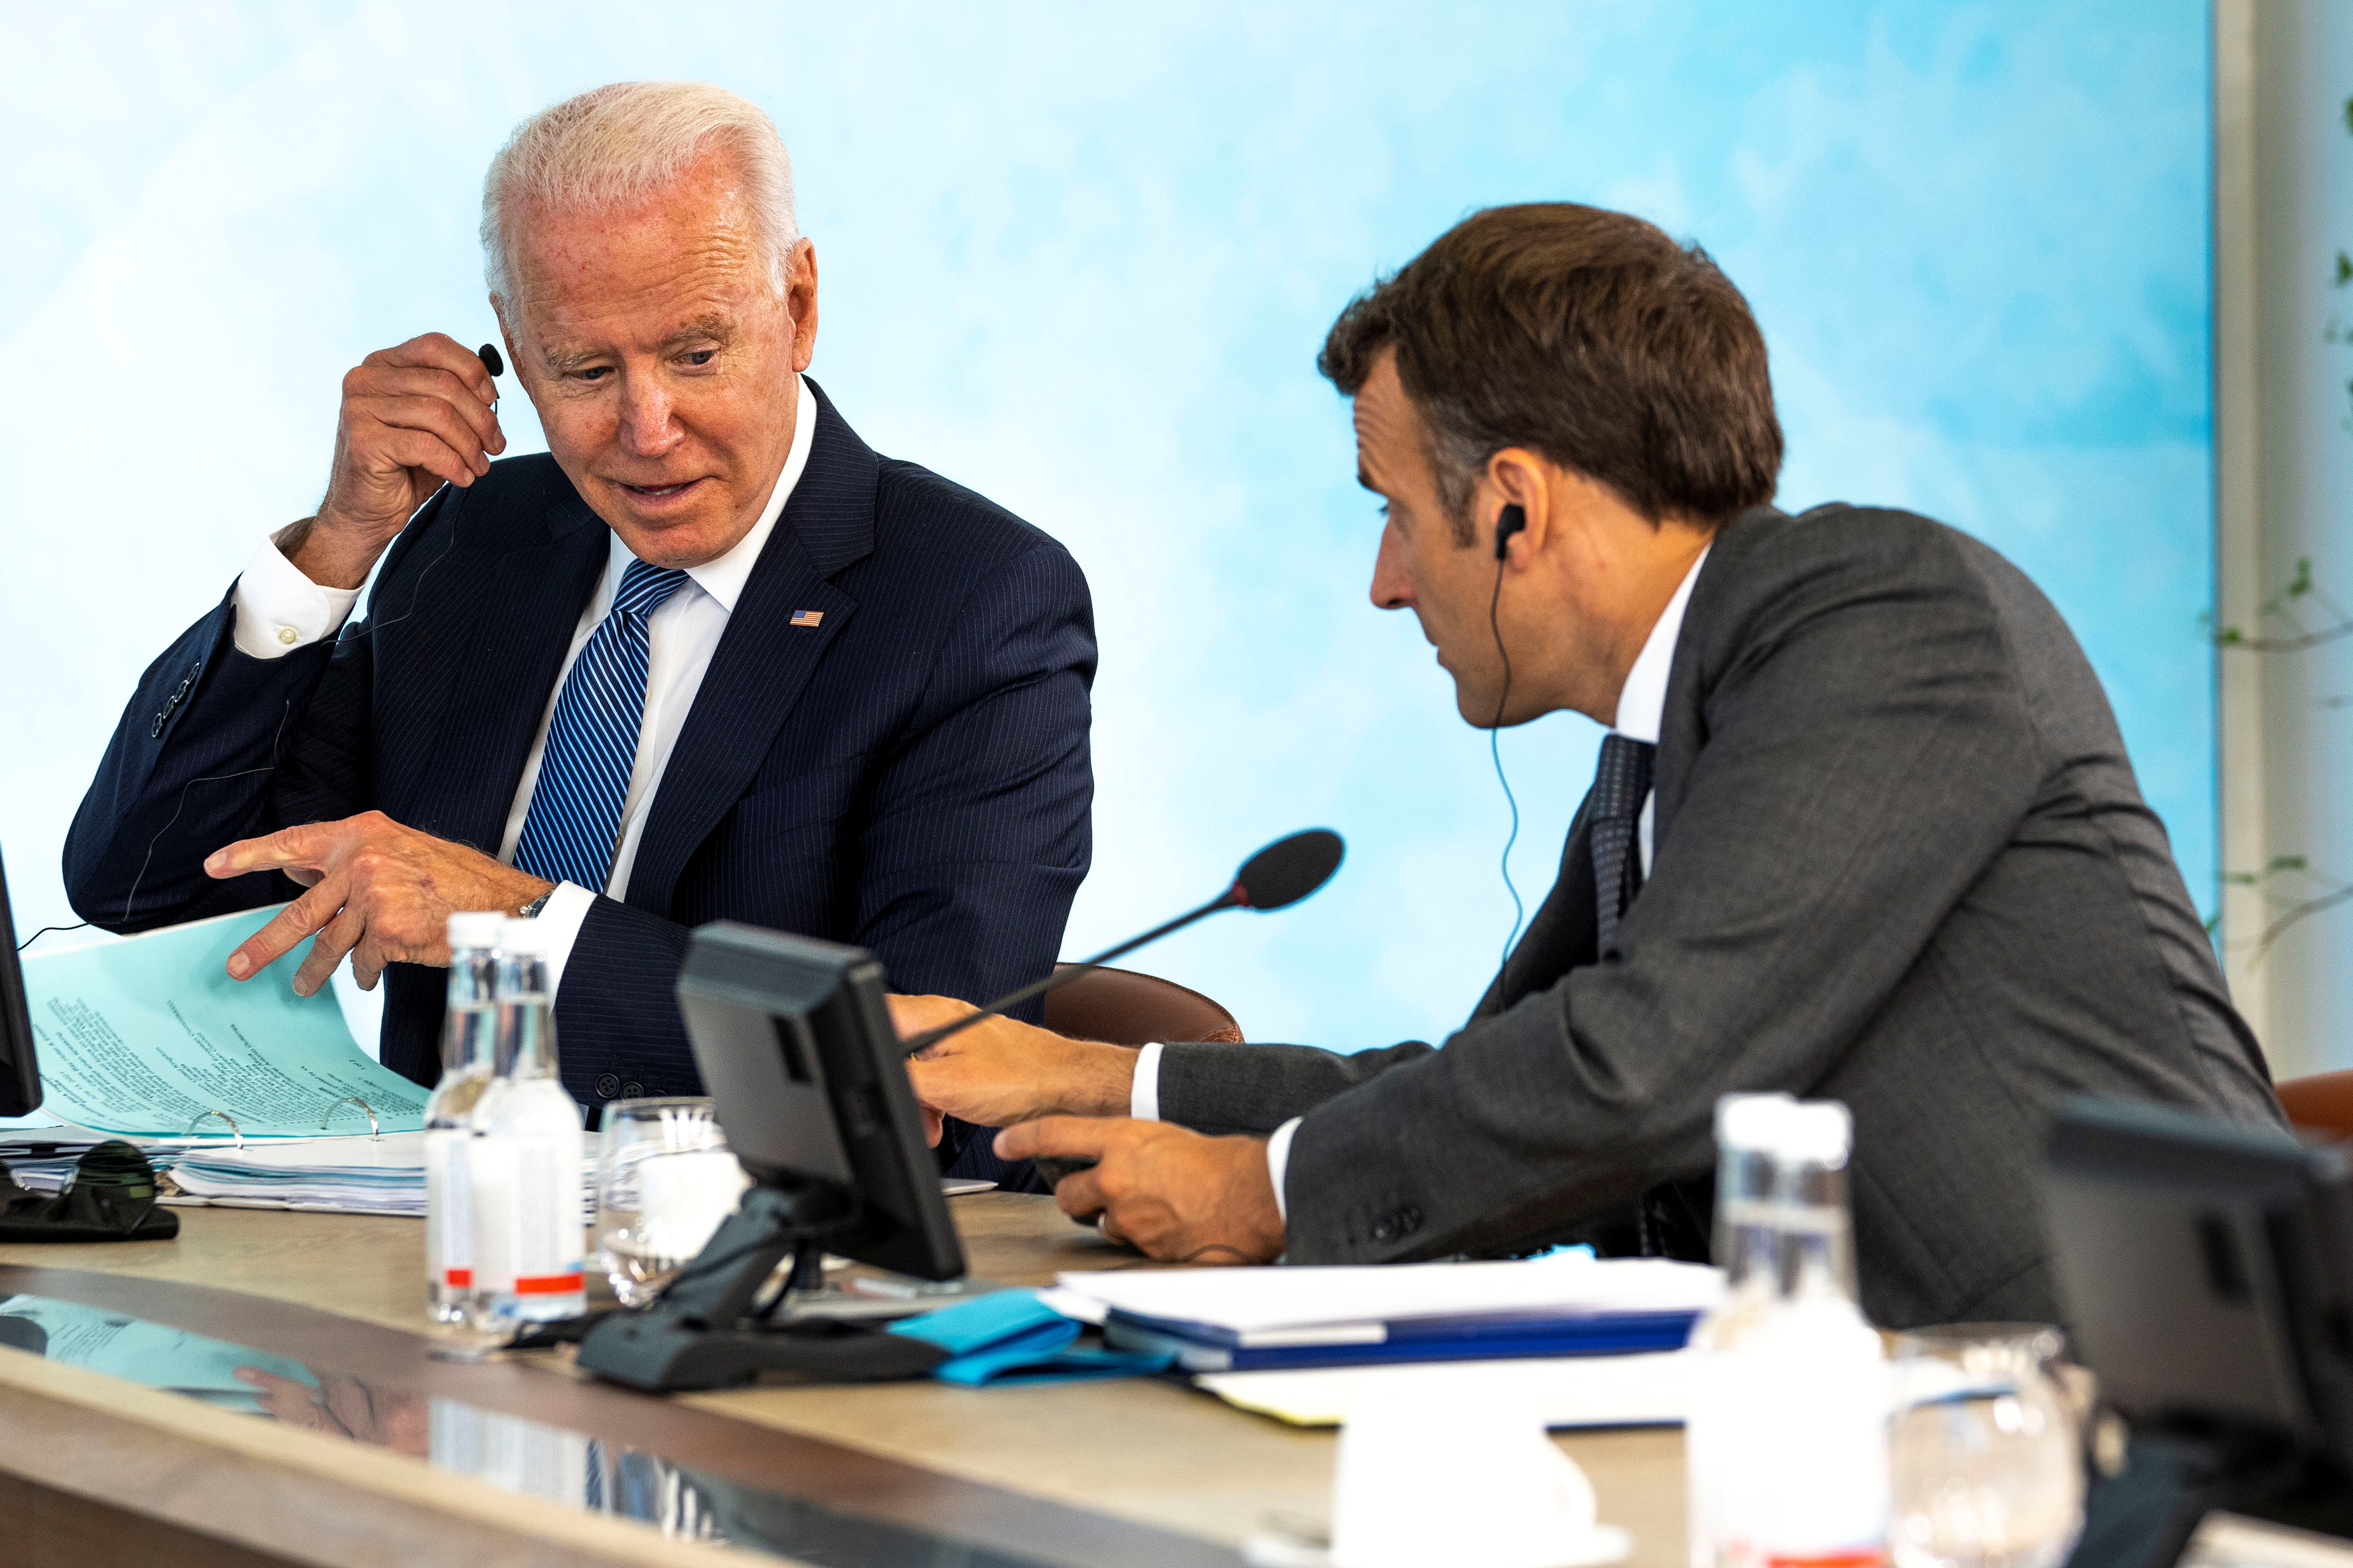 El presidente de Estados Unidos, Joe Biden, habla con el presidente francés, Emmanuel Macron, en la última sesión de la cumbre del G7 en Carbis Bay, Cornualles, Gran Bretaña, el 13 de junio de 2021. Doug Mills / Pool vía REUTERS